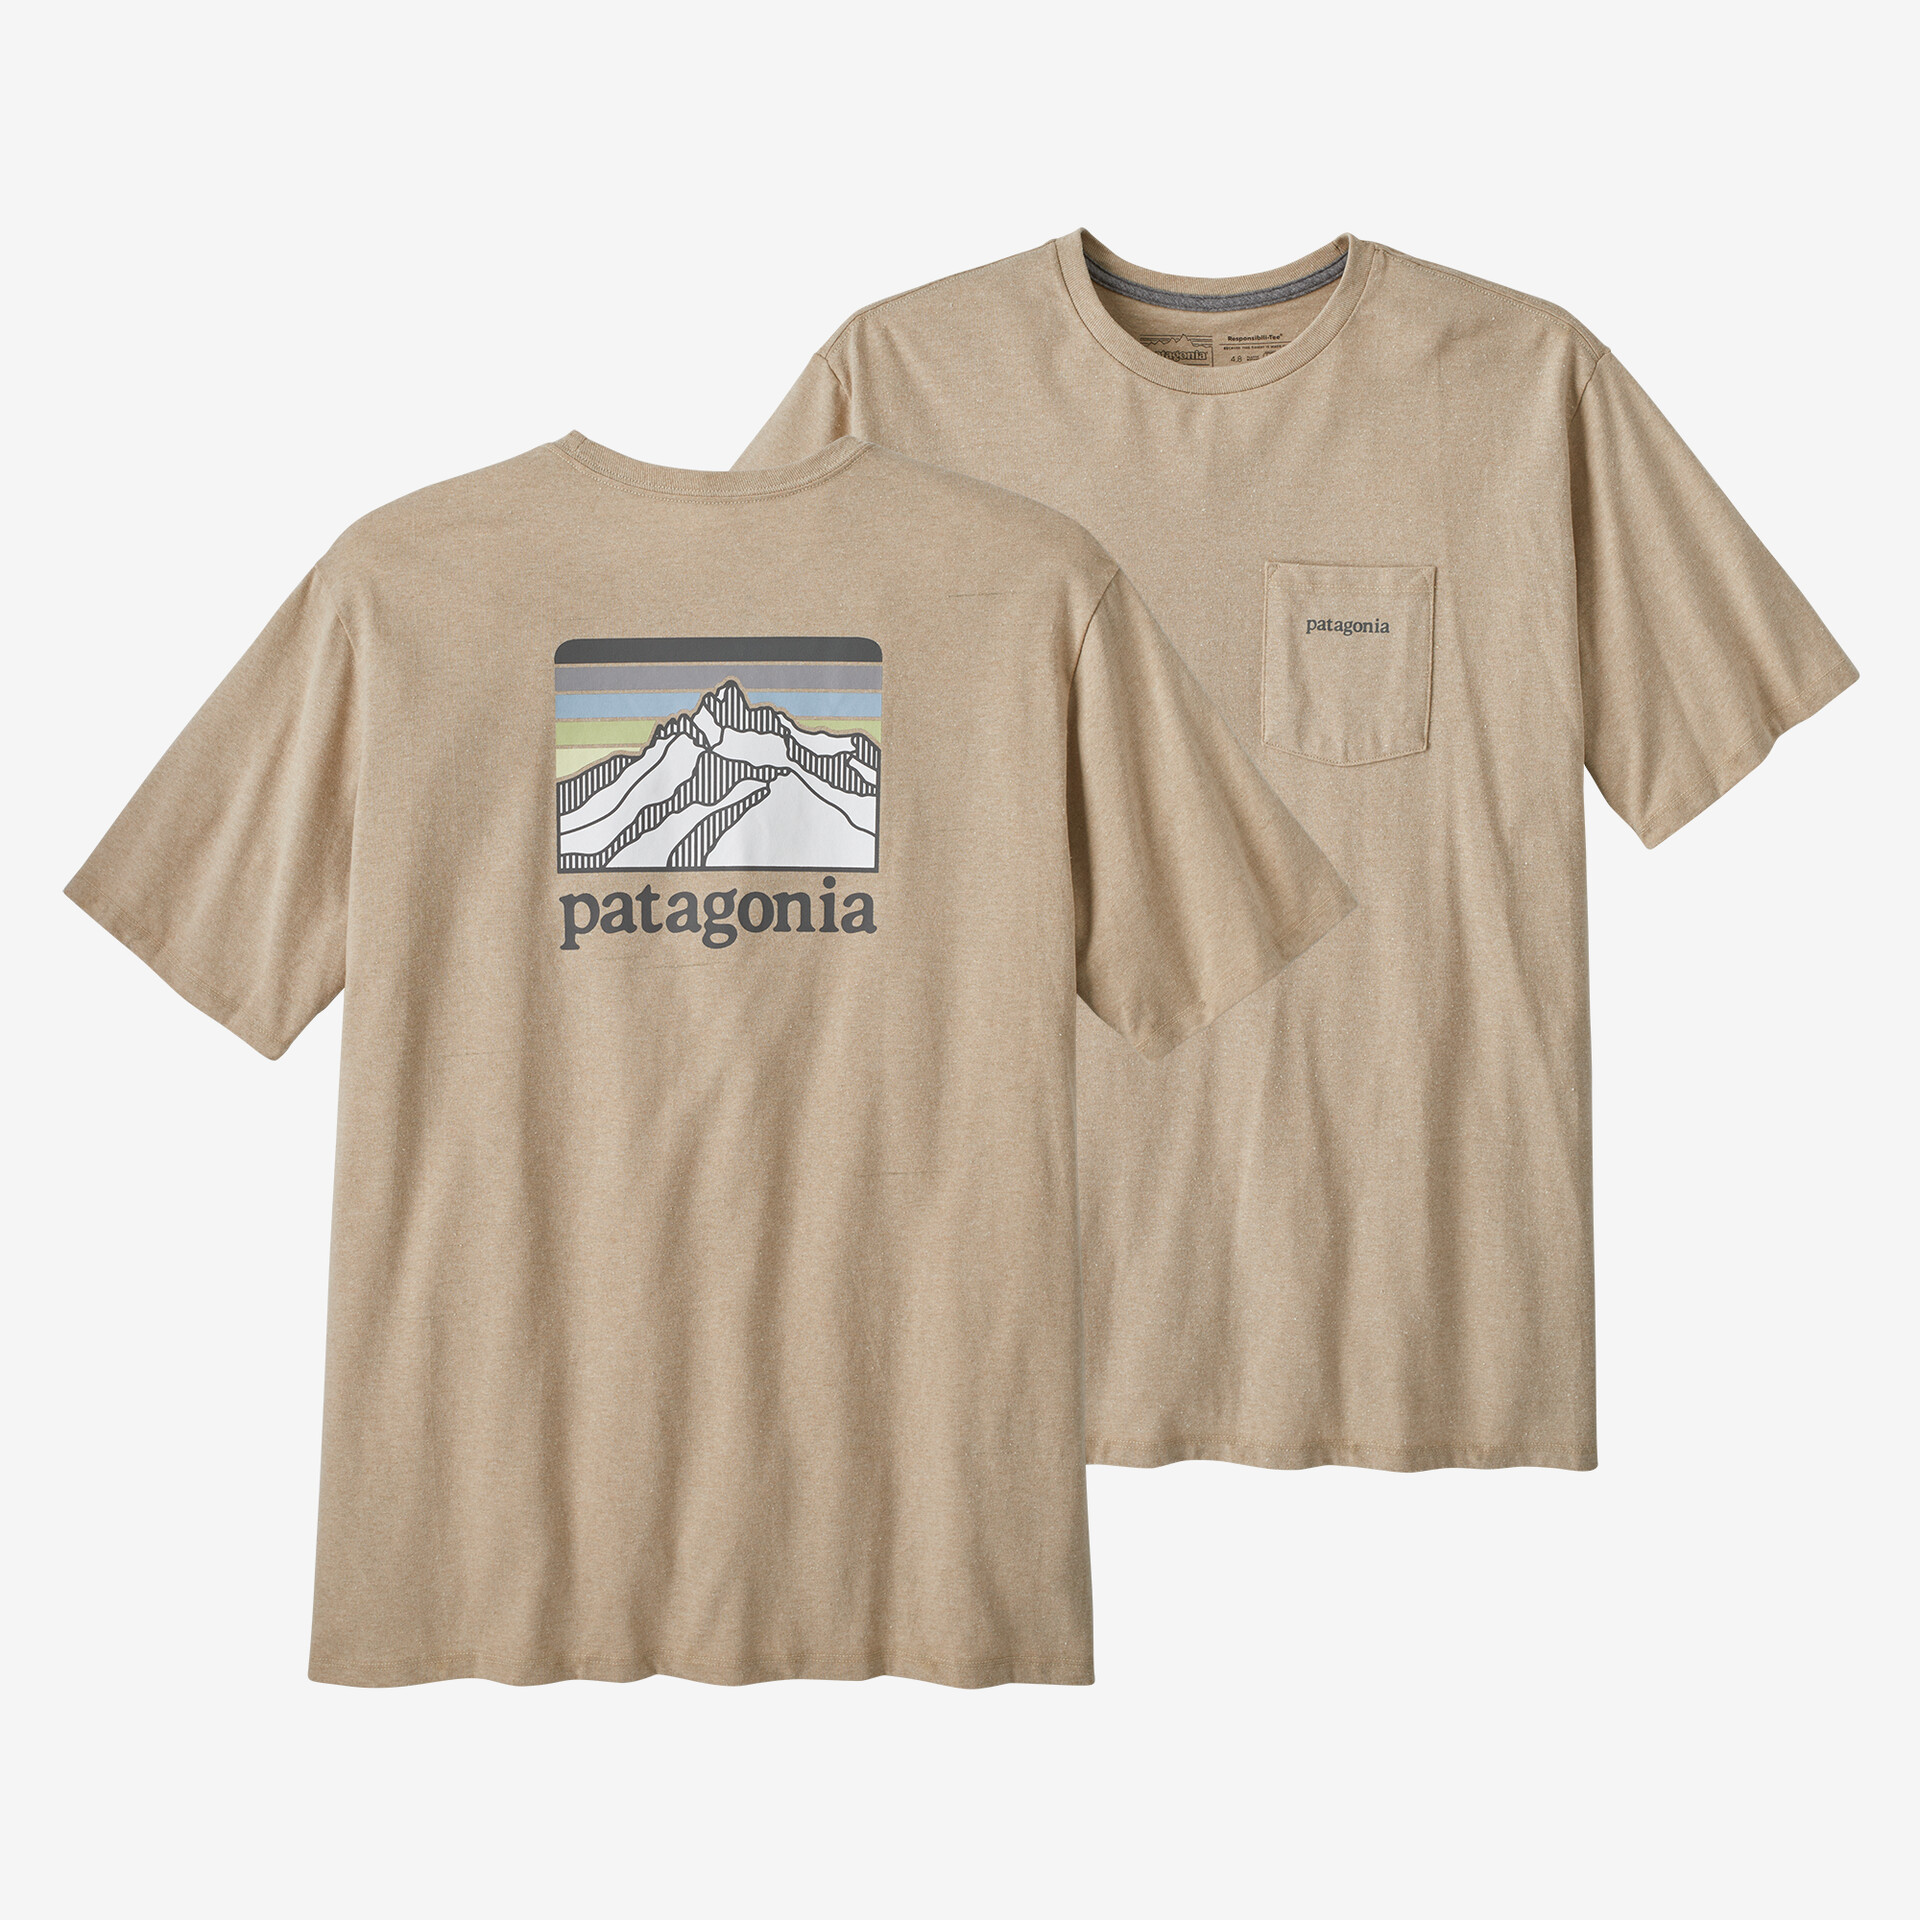 Мужская ответственная футболка с логотипом и карманом Patagonia, цвет Oar Tan мужская ответственная футболка с логотипом и карманом patagonia серый